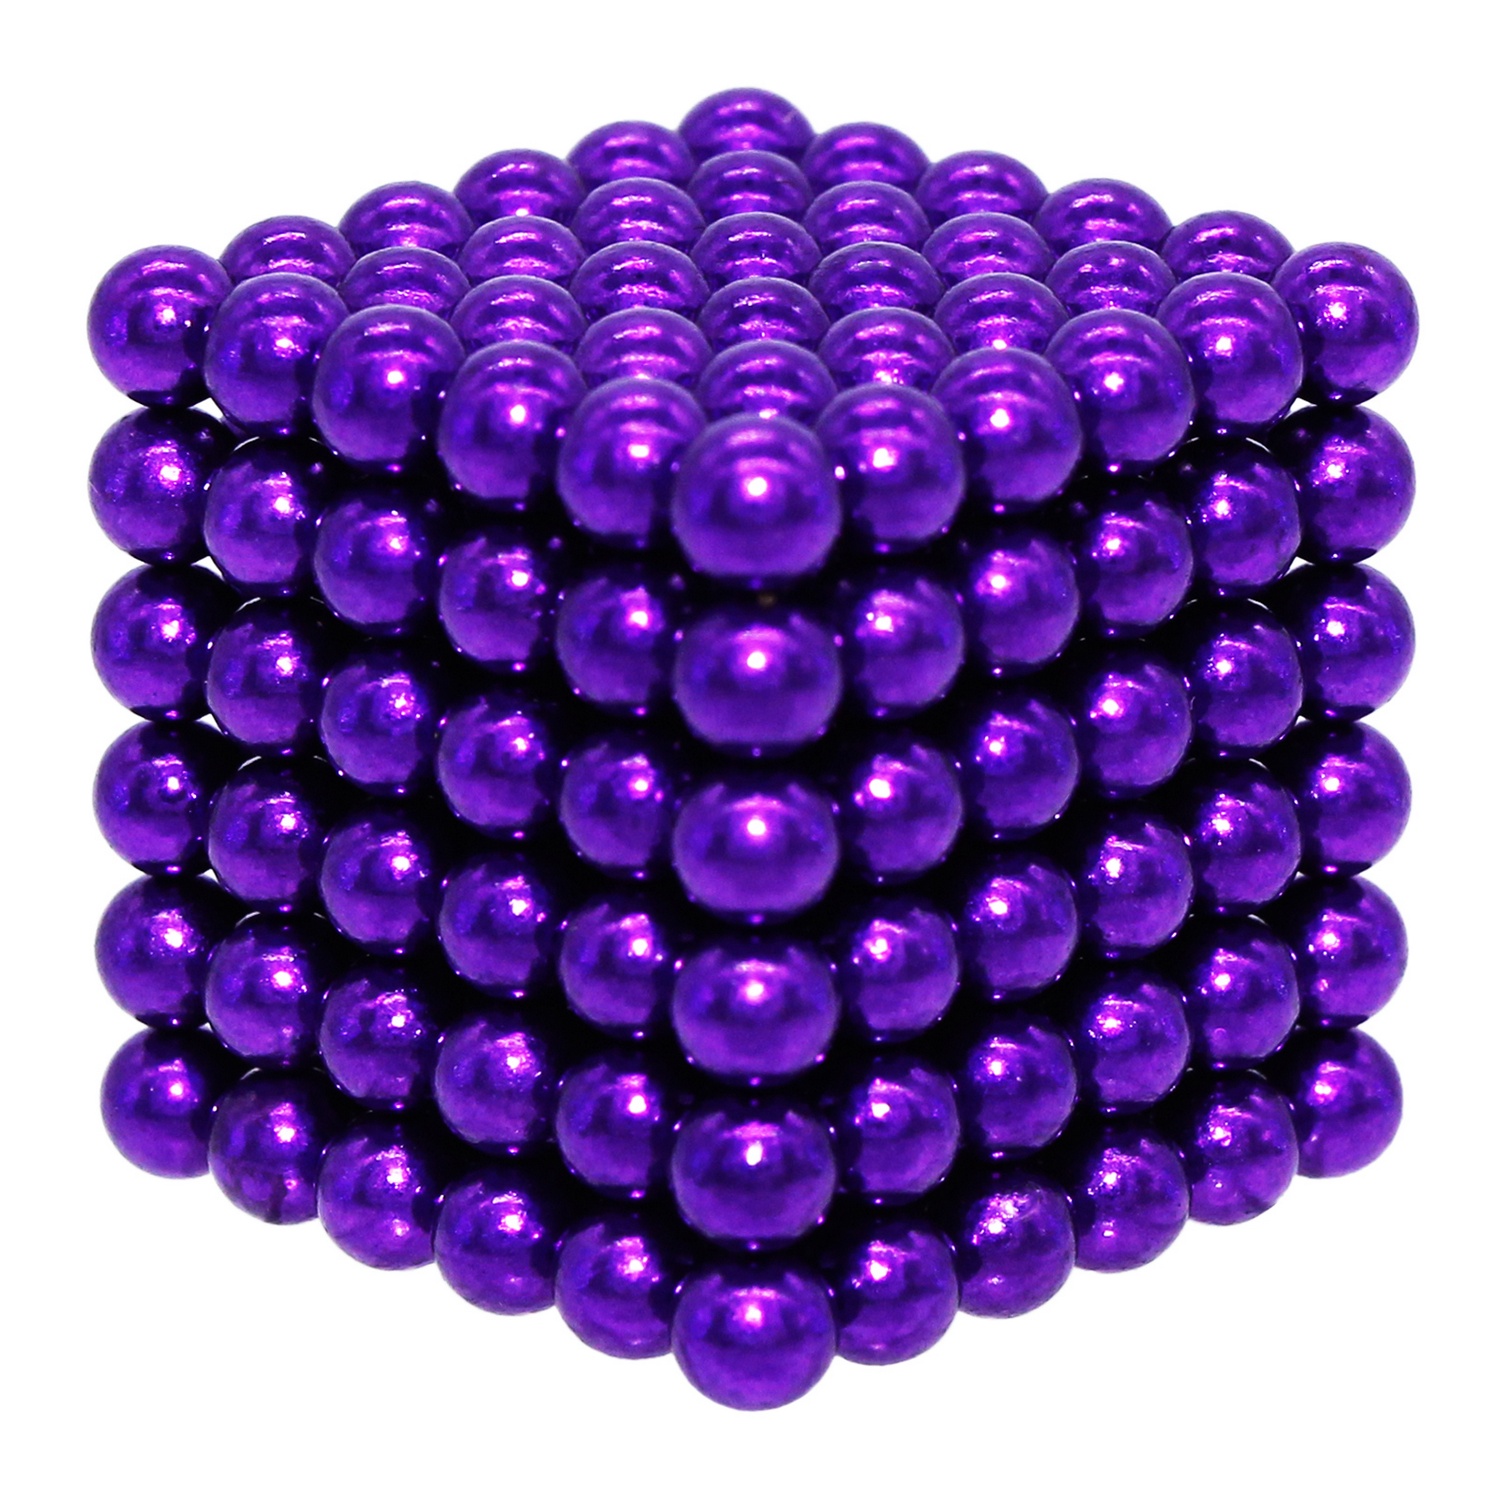 Головоломка магнитная Magnetic Cube сиреневый неокуб 216 элементов - фото 6